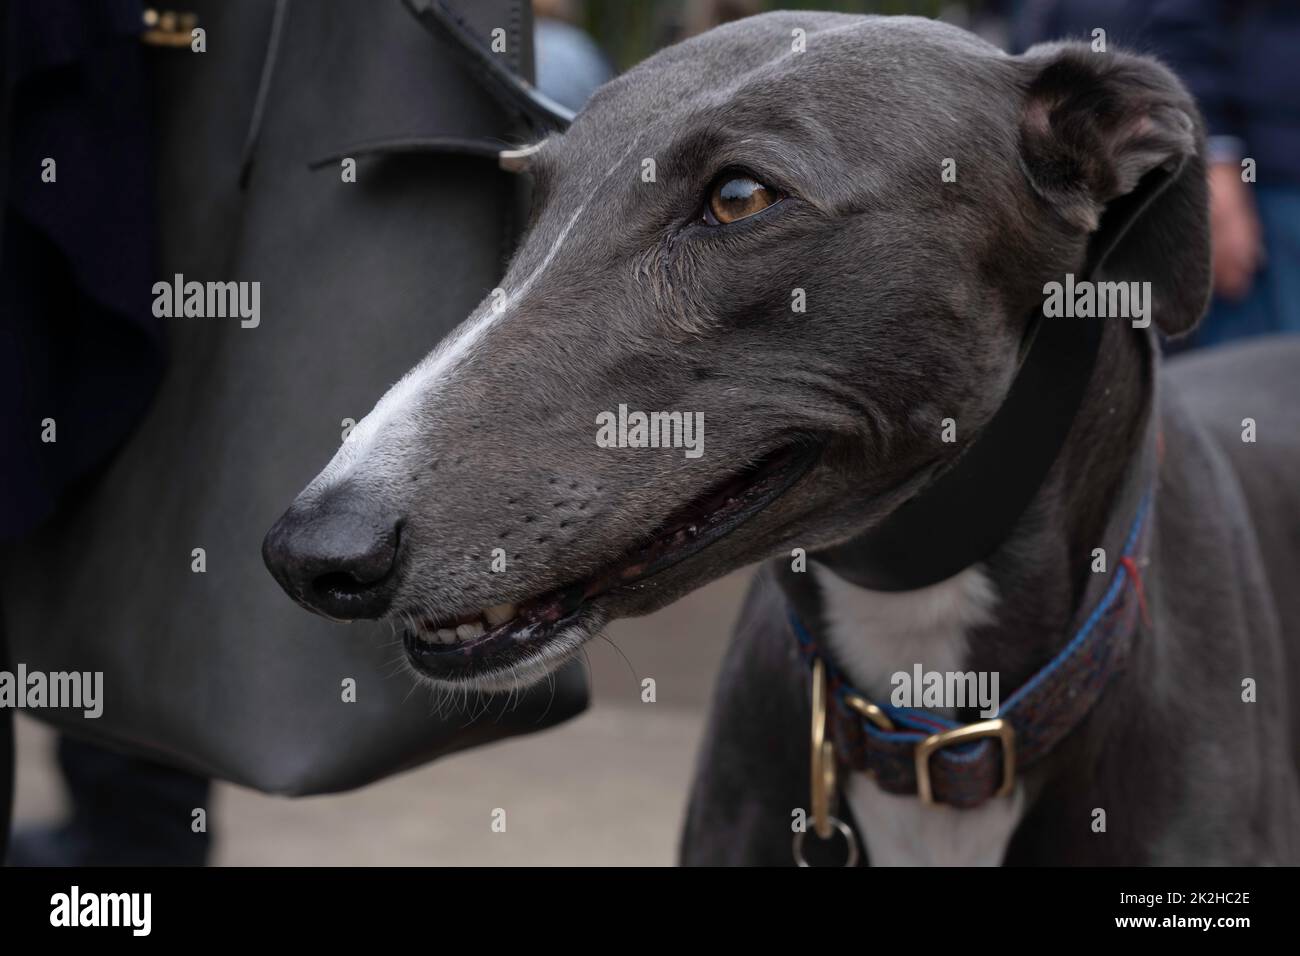 Nahaufnahme des Kopfes eines Greyhounds. Das Tier geht an der Leine neben dem Besitzer und schaut nach vorne. Konzentrieren Sie sich auf die Augenpartie Stockfoto